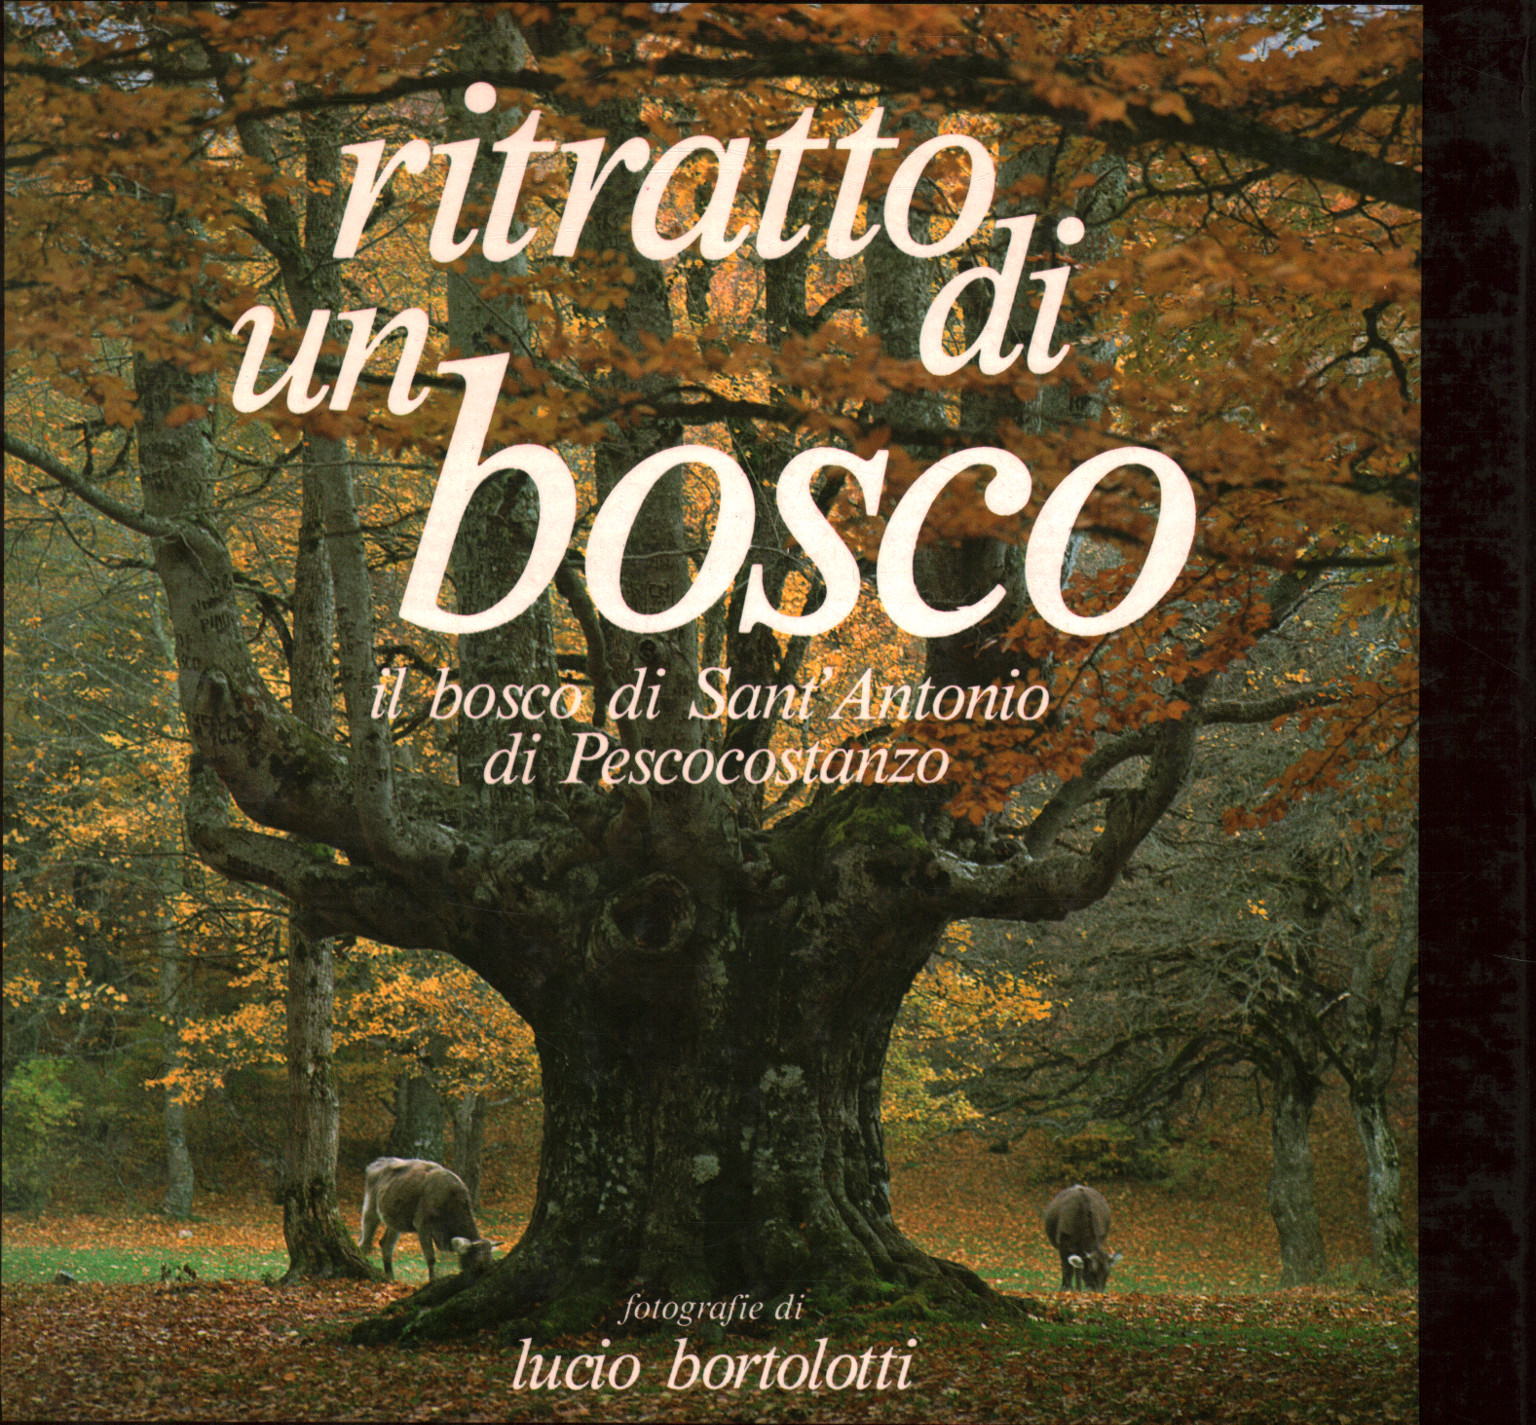 Retrato de un bosque:el bosco di Sant'antonio P, Francesco Sabatini Lucio Bortolotti